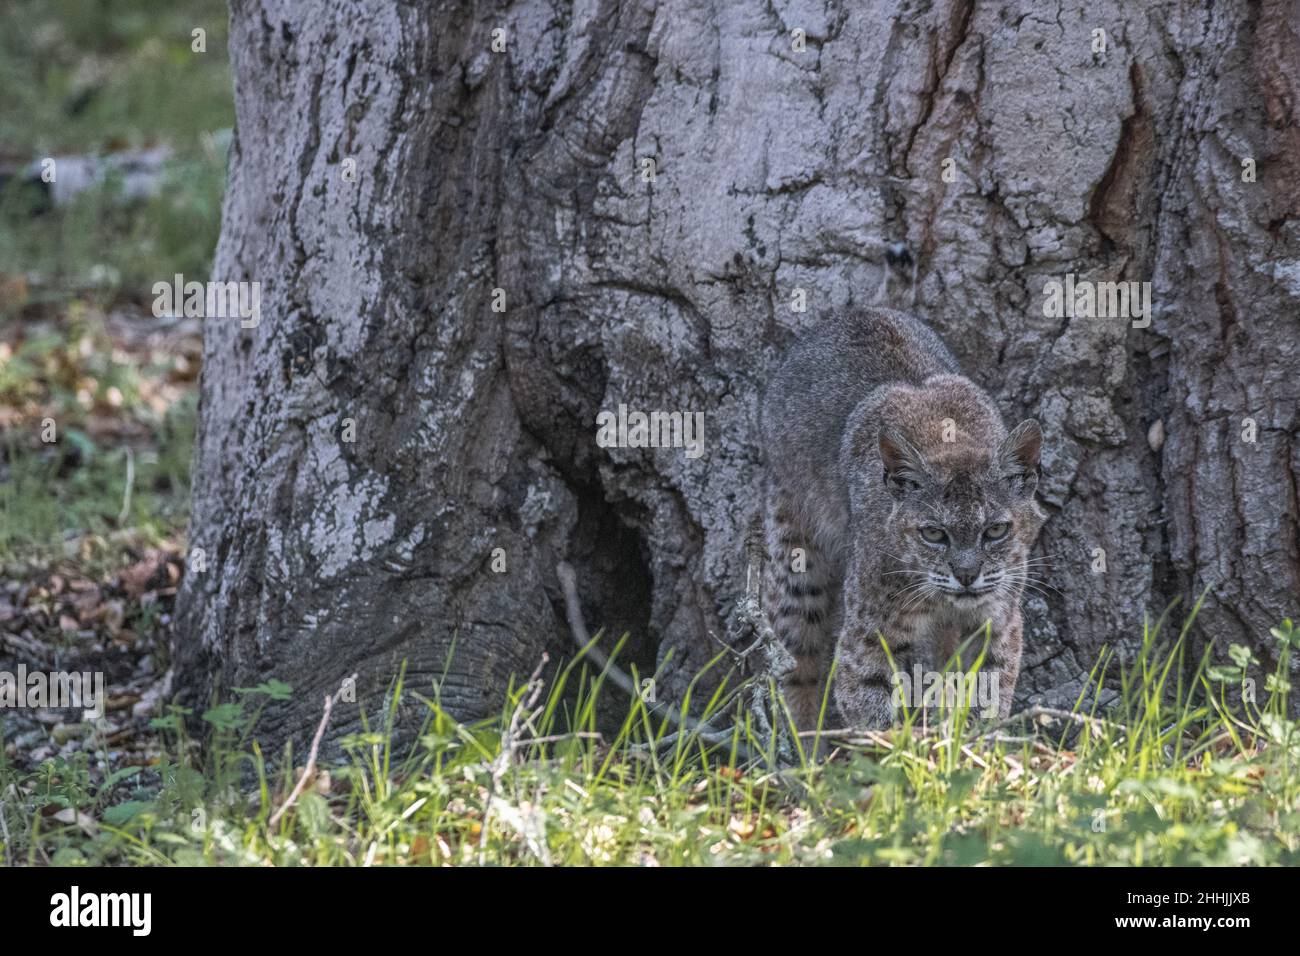 Un lynx roux sauvage (Lynx rufus) se Marie extrêmement bien avec son environnement, montrant son excellent camouflage.En Californie, aux États-Unis. Banque D'Images